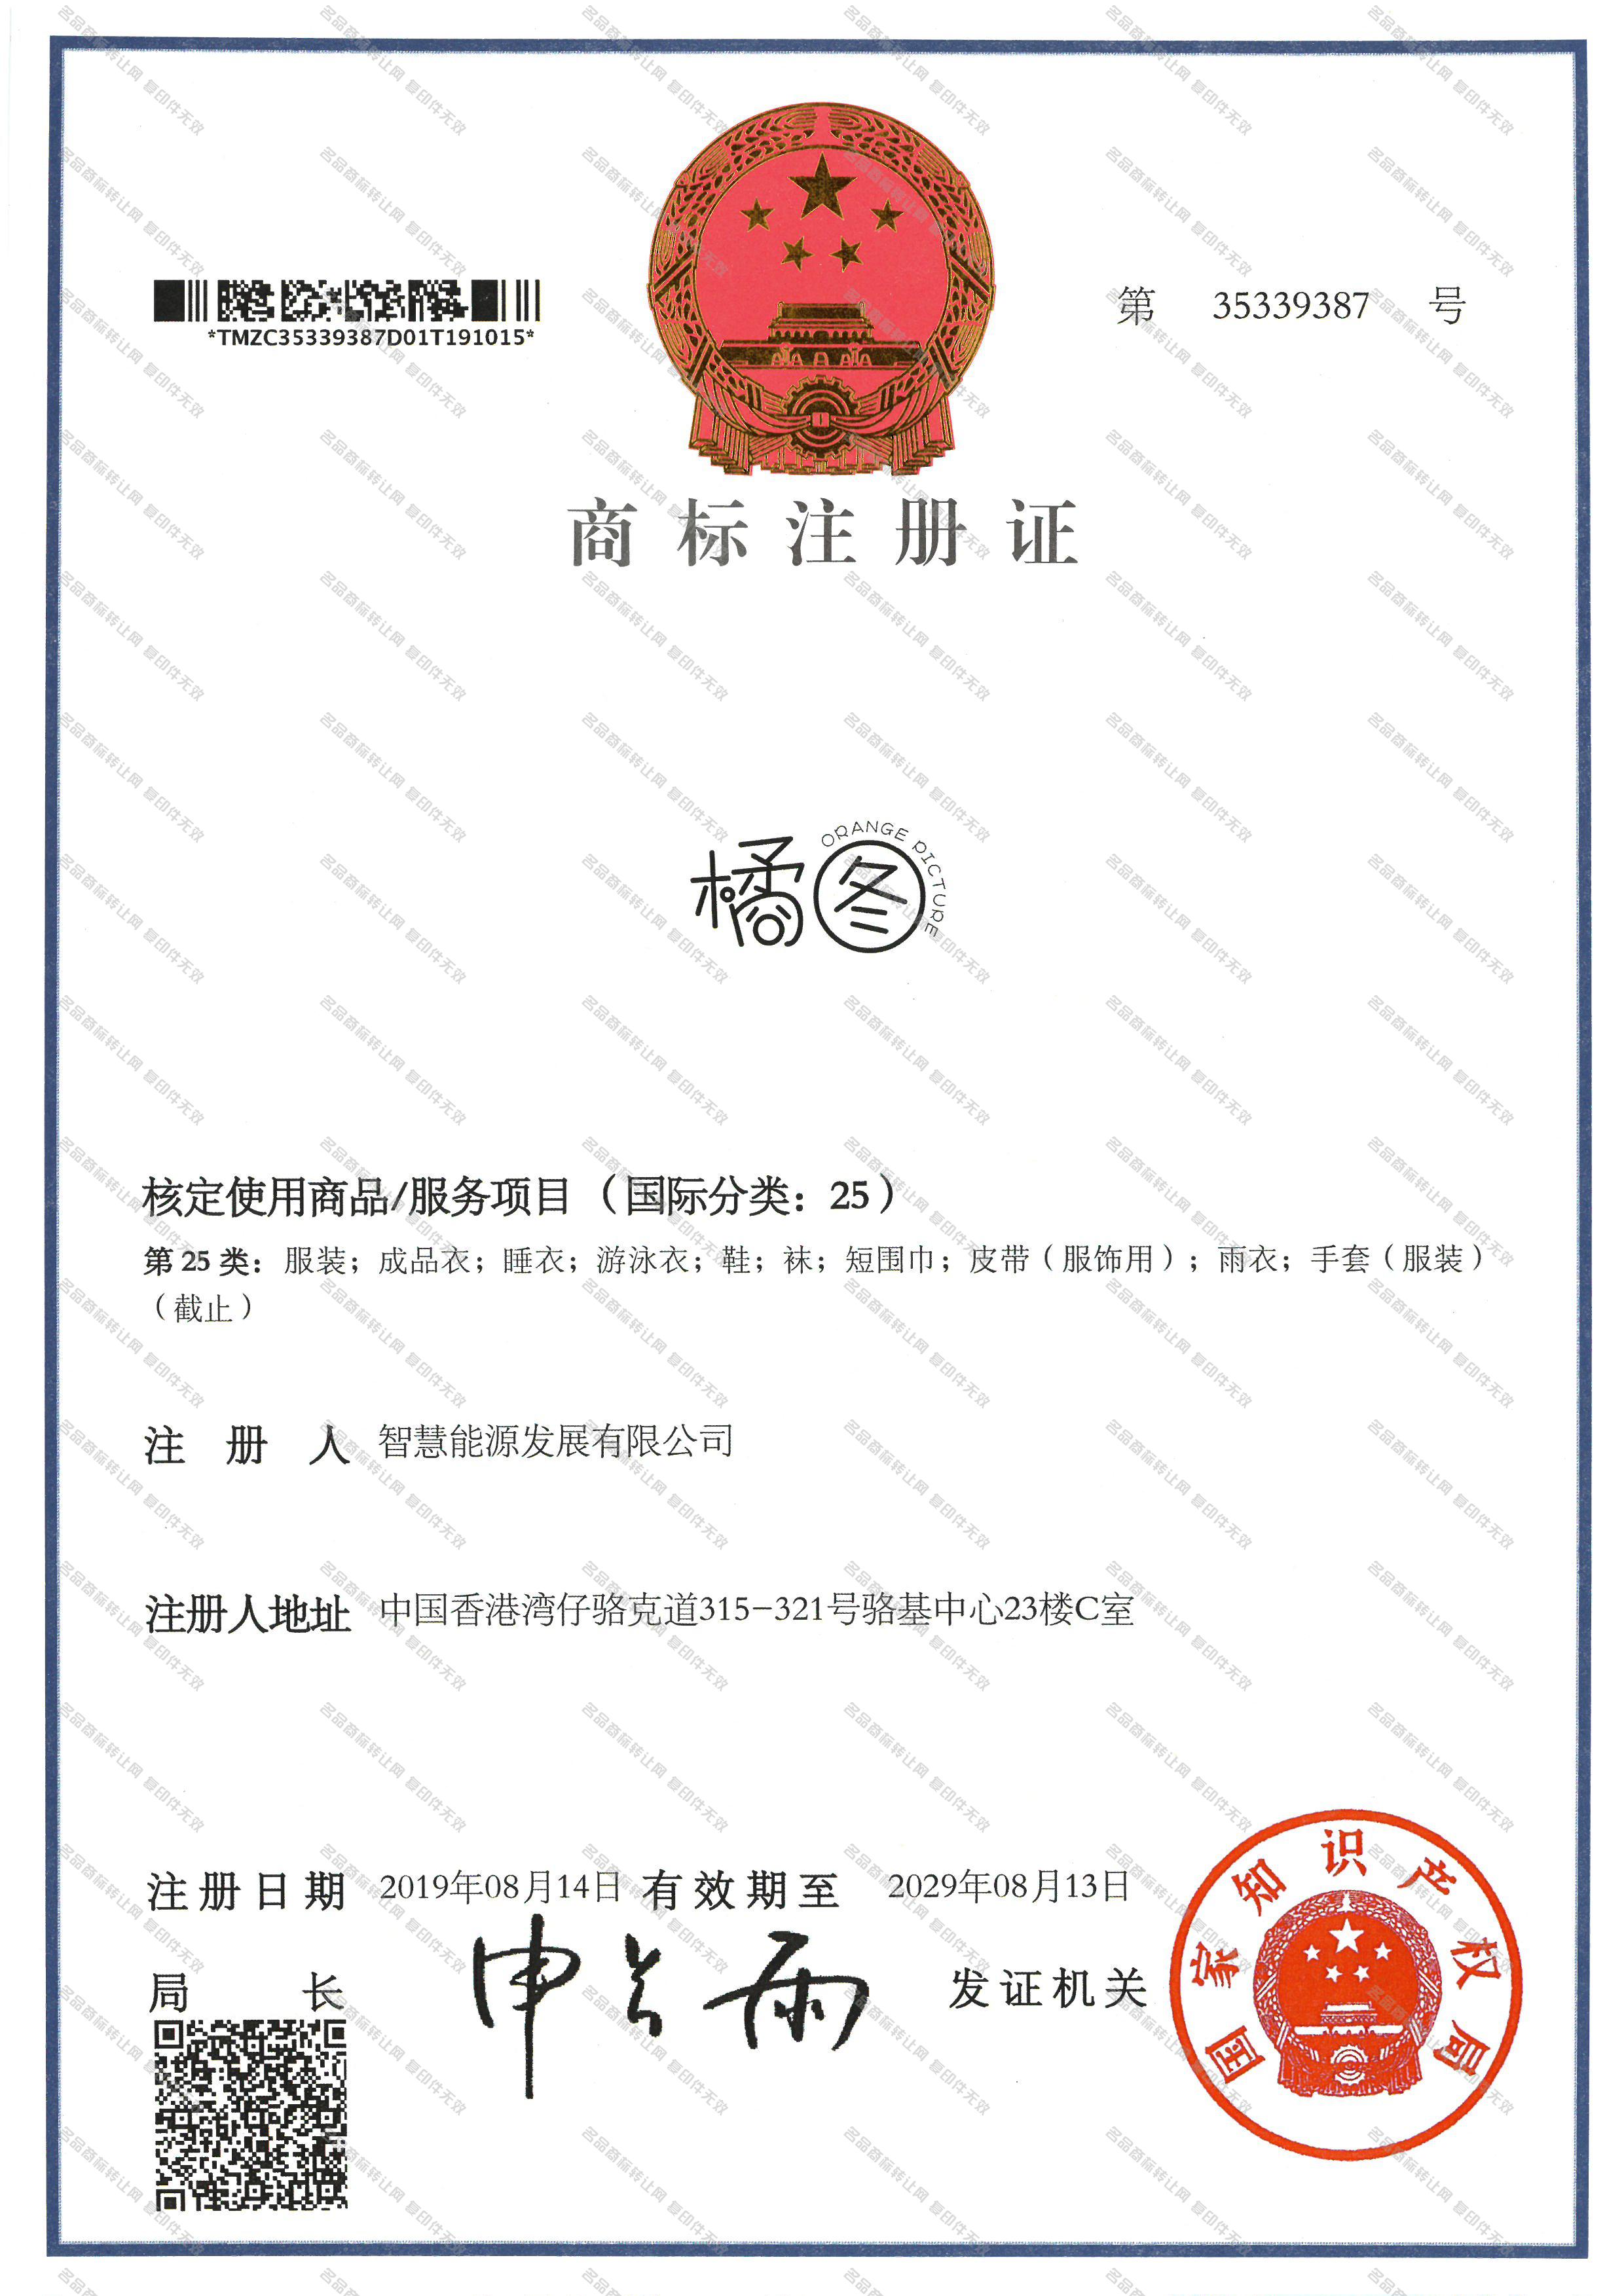 橘图 ORANGE PICTURE注册证